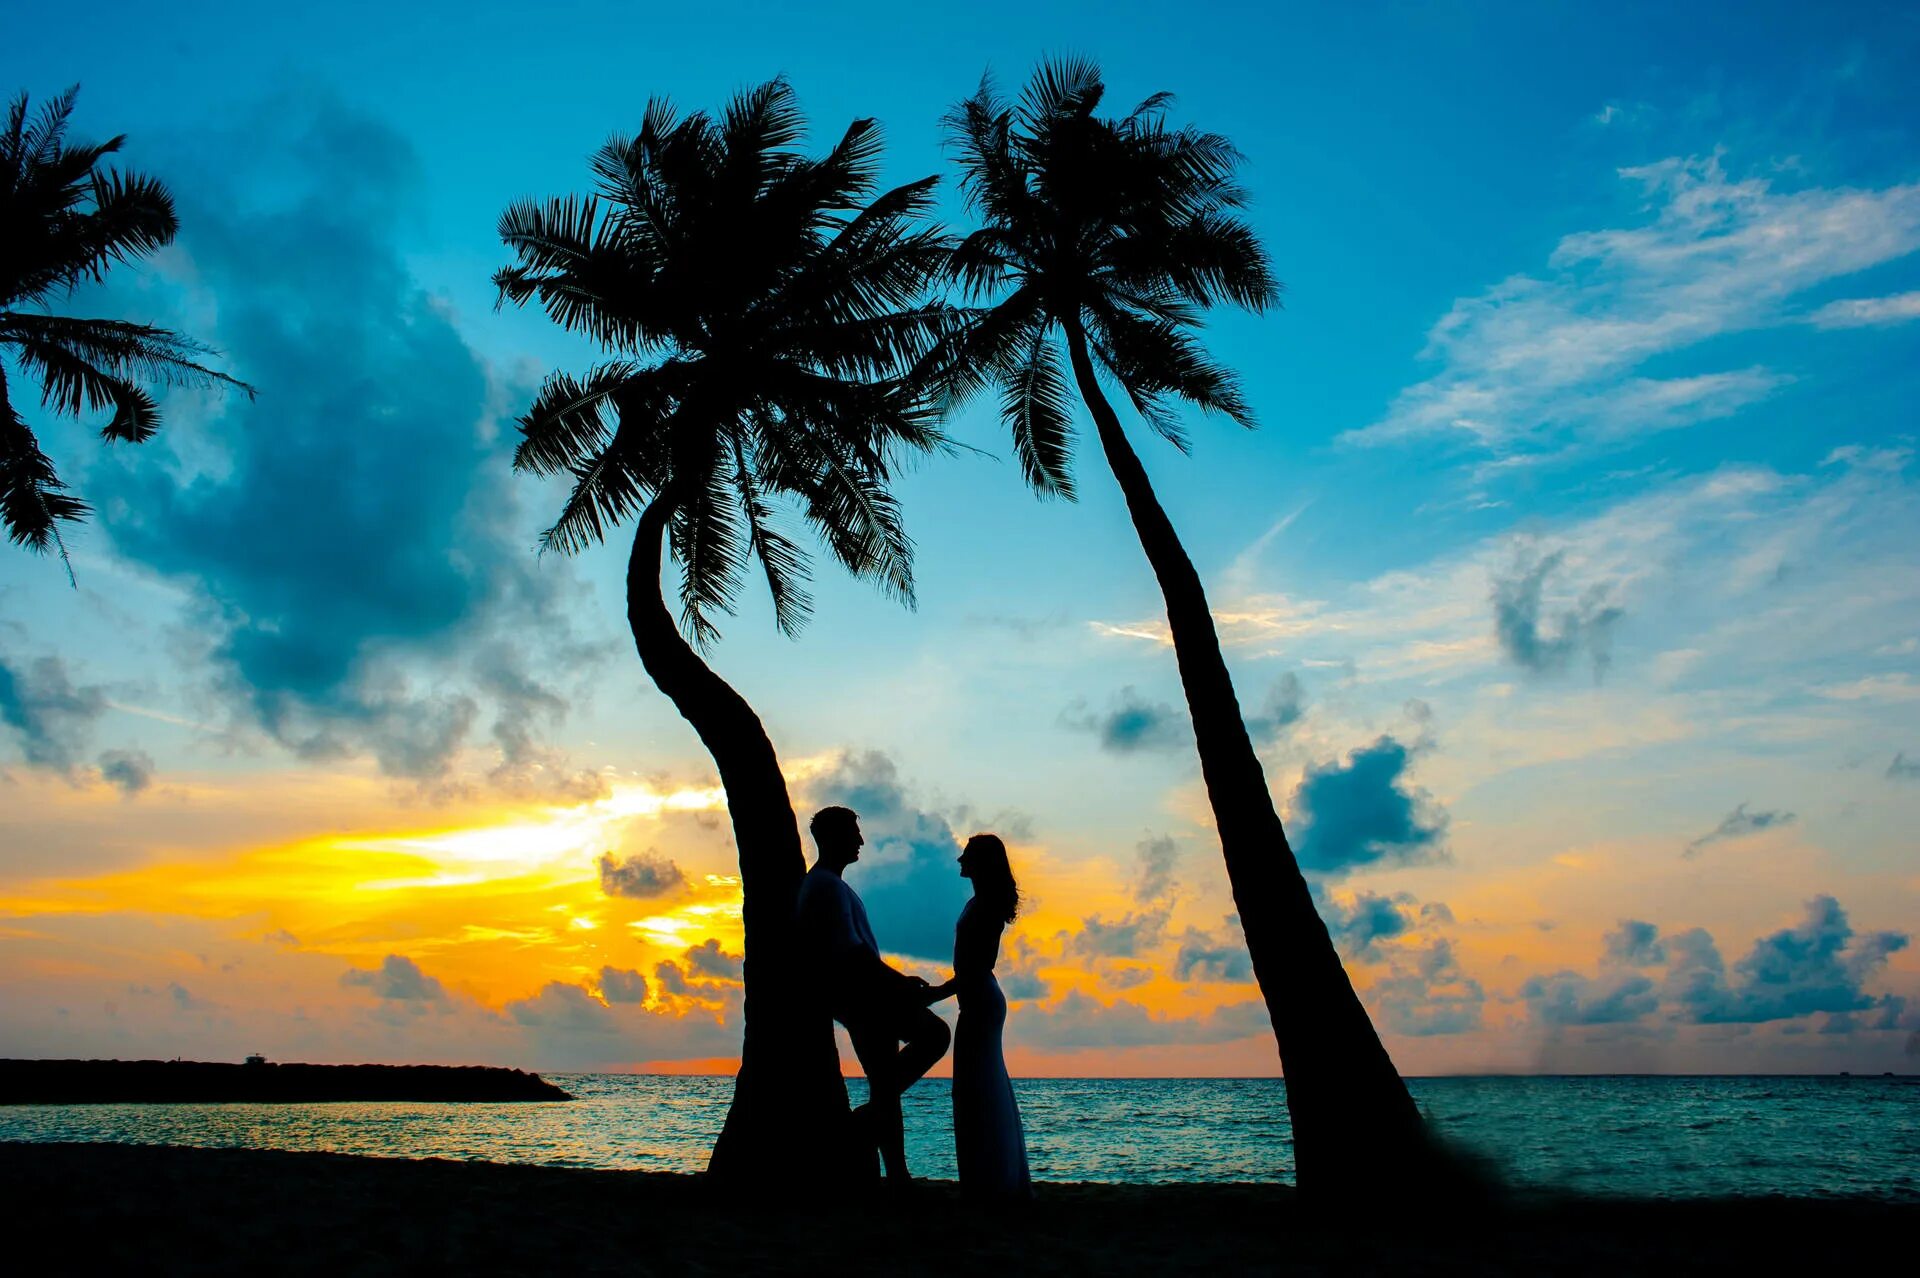 Feeling love in october. Сансет Бич Мальдивы. Пляж пальмы люди. Двое влюблённых на острове. Пальмы солнце.